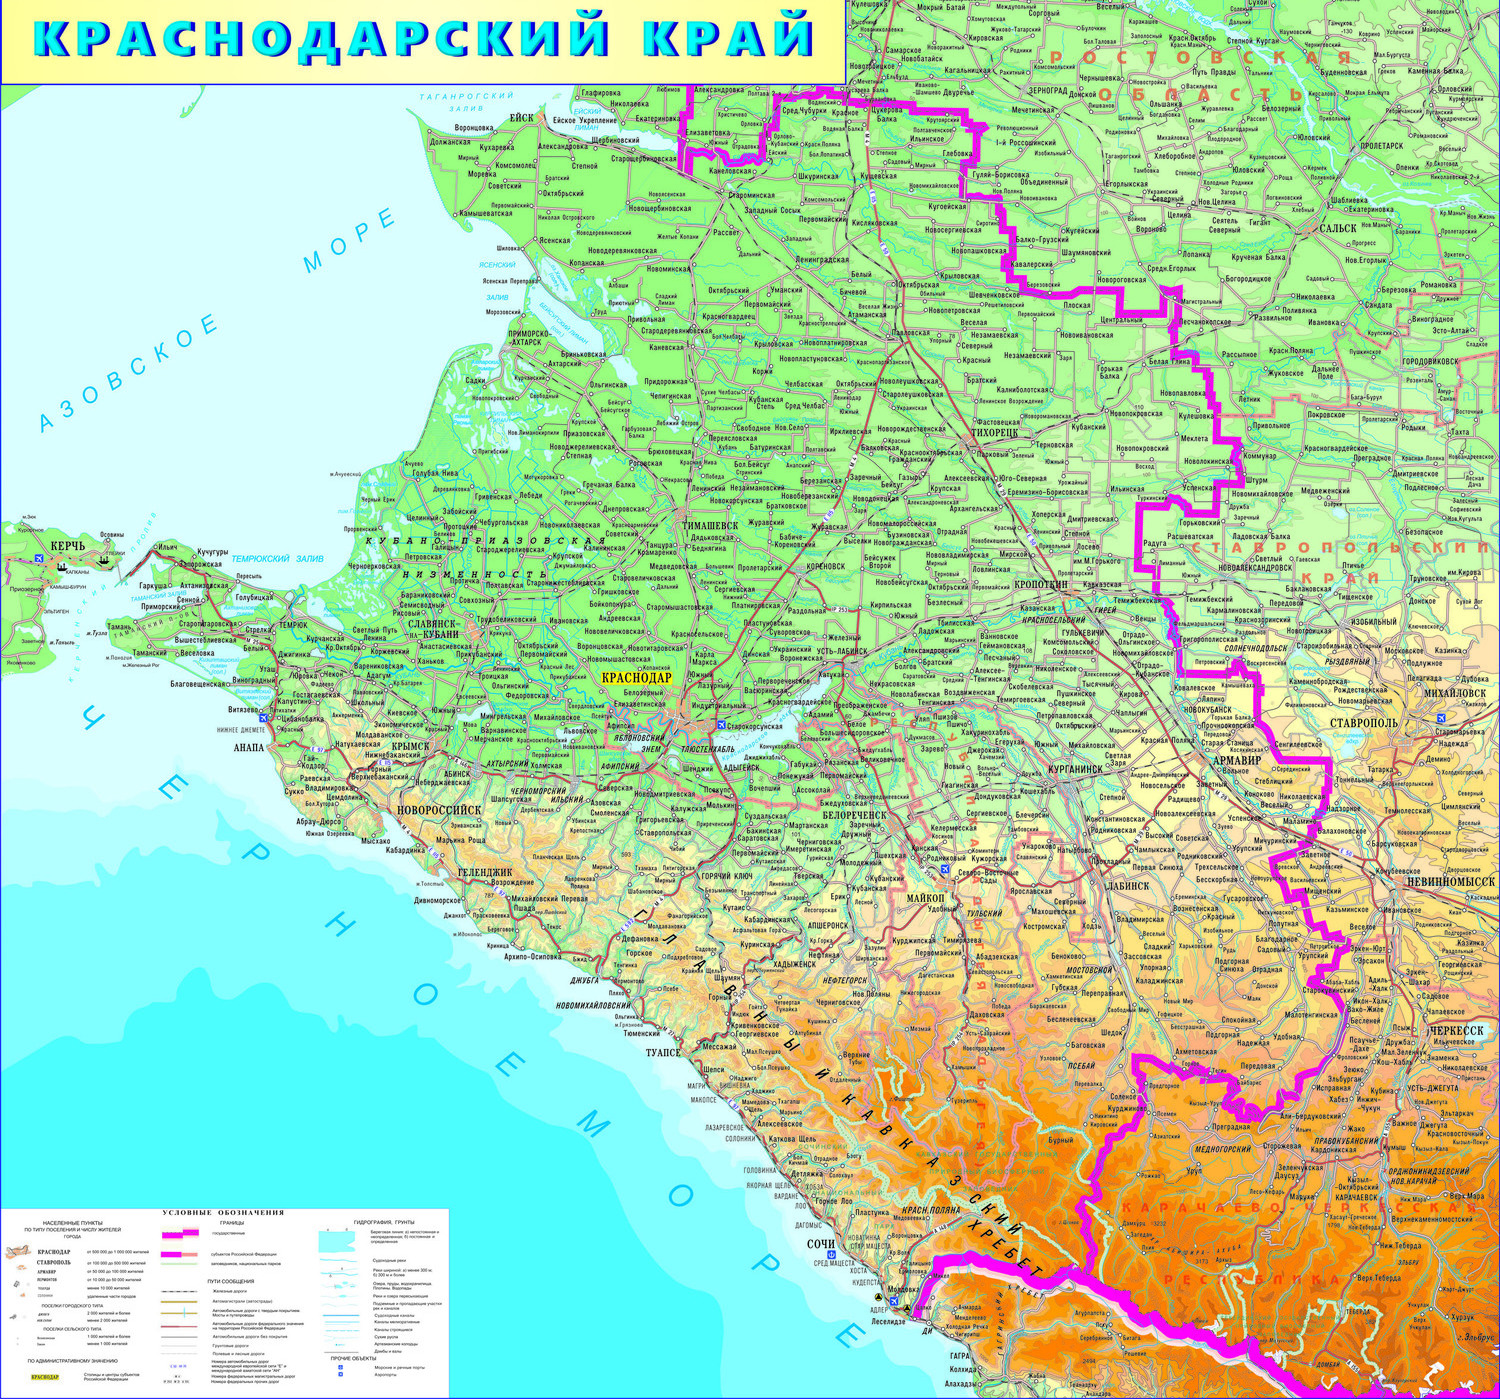 Карта краснодарского края и адыгеи с населенными